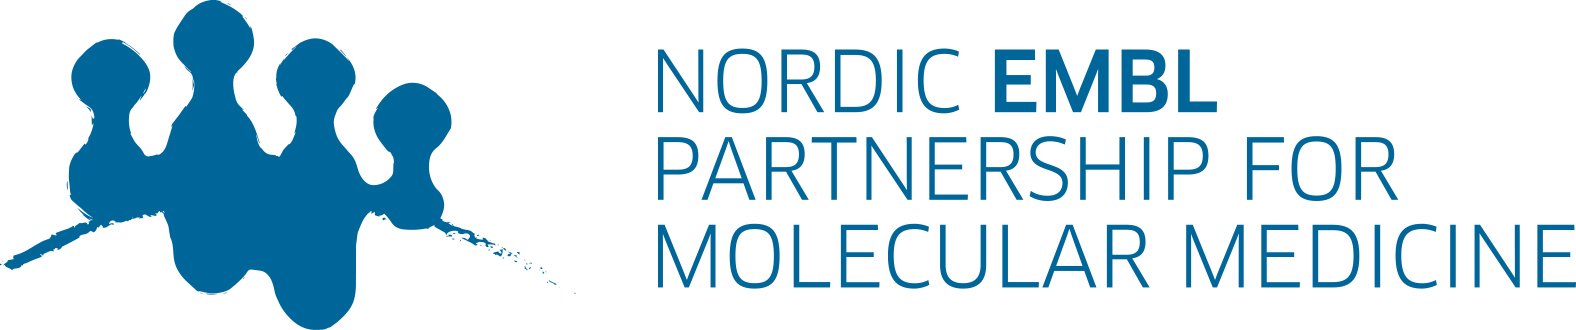 Nordic-EMBL-logo_rgb.jpg